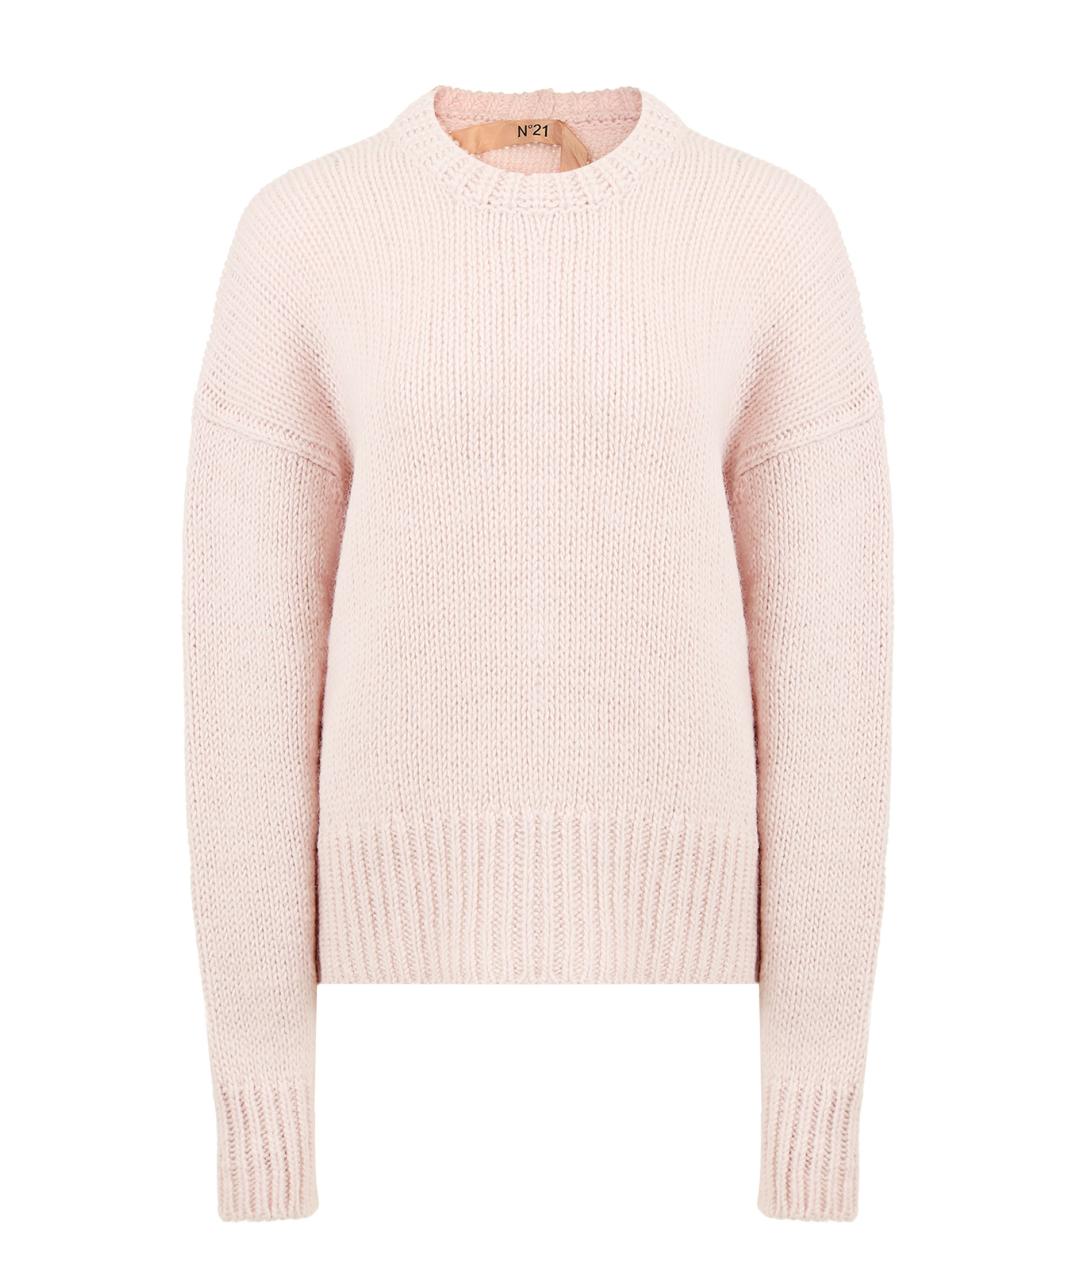 NO. 21 Розовый шерстяной джемпер / свитер, фото 1